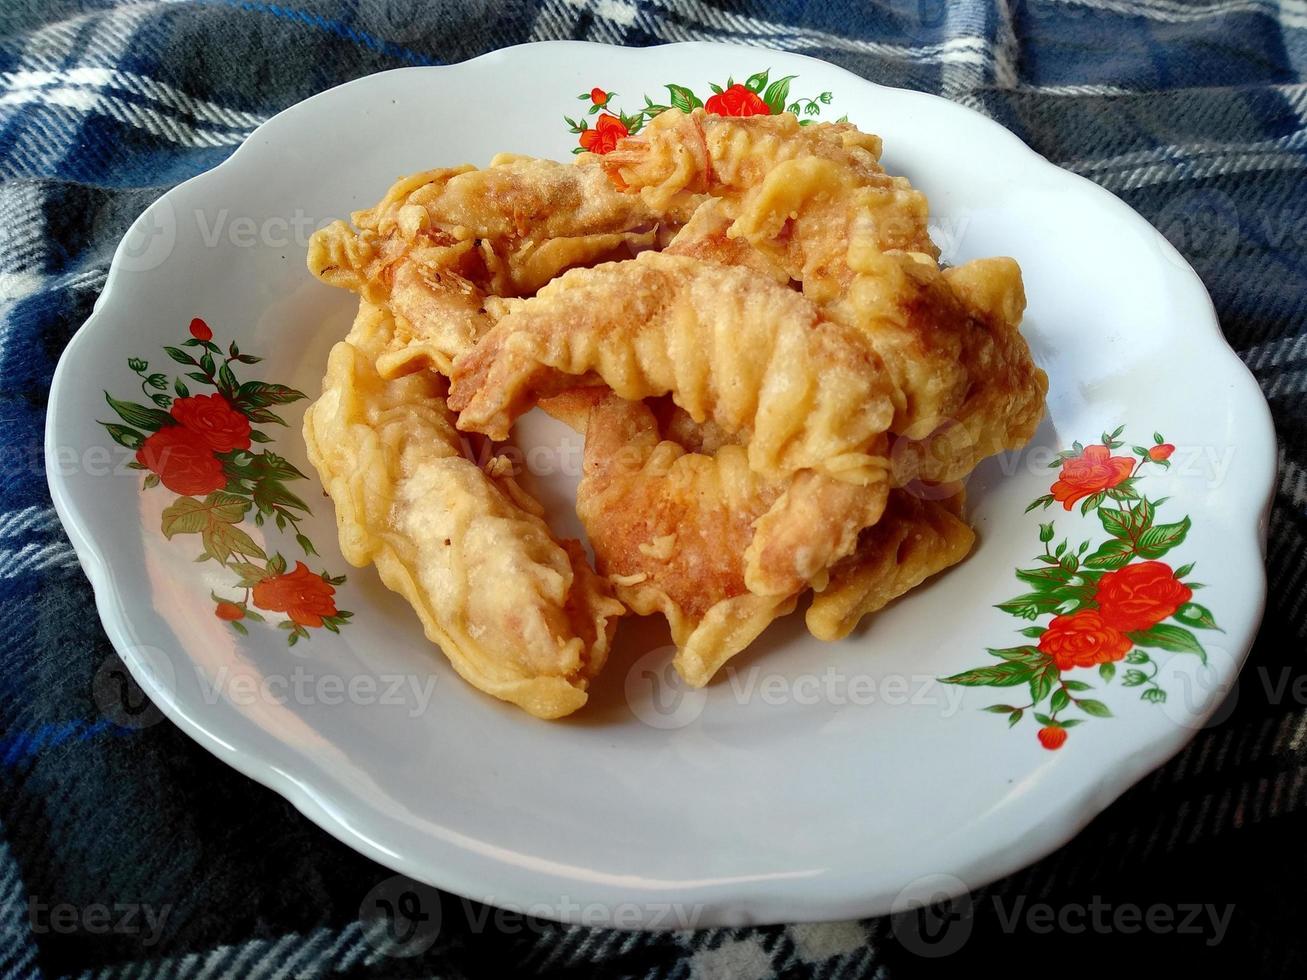 udang goreng tepung o tempura en un plato. comida culinaria indonesia foto